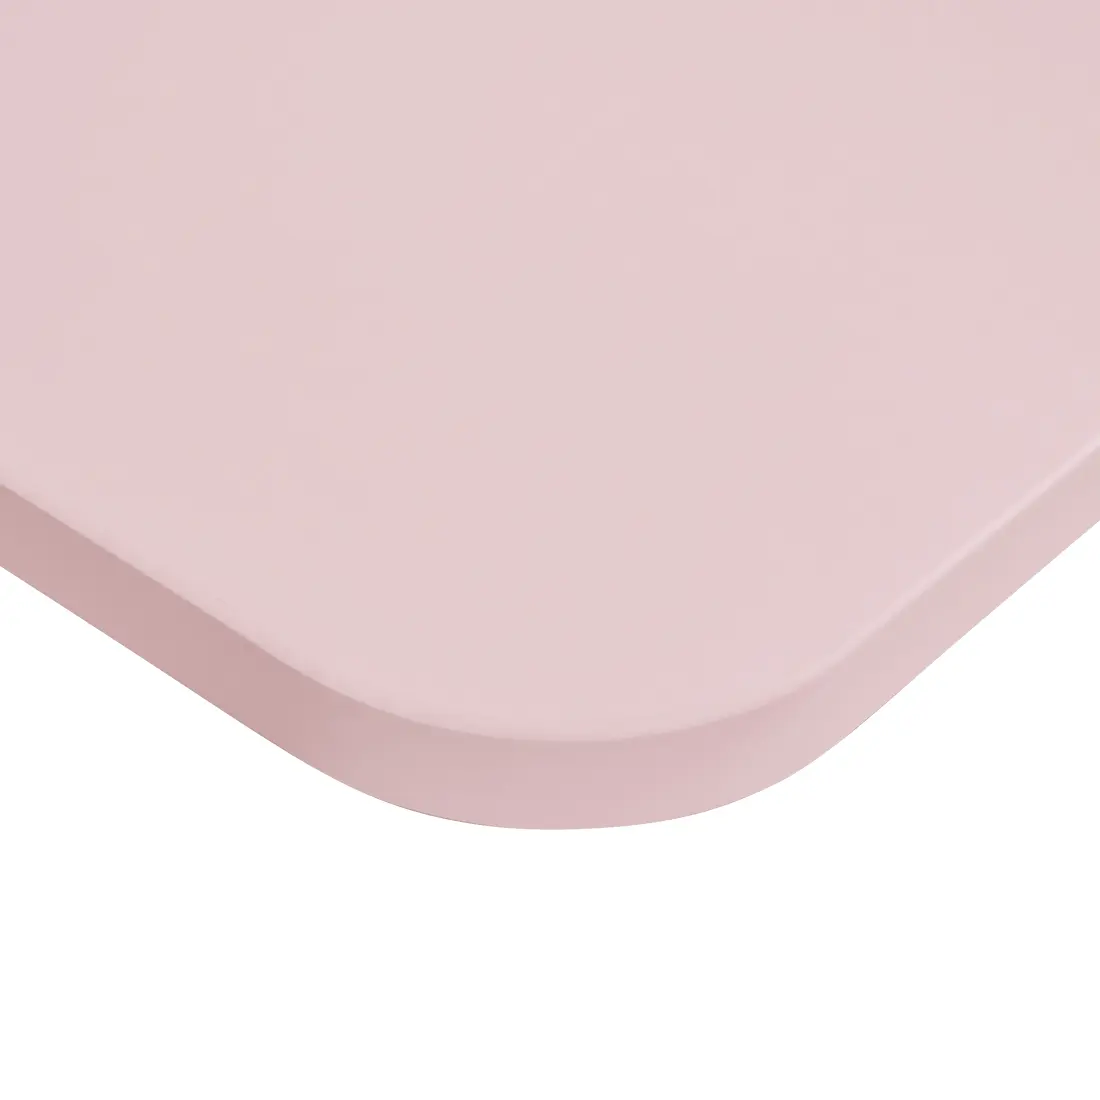 Uniwersalny blat biurka 120x60cm różowy